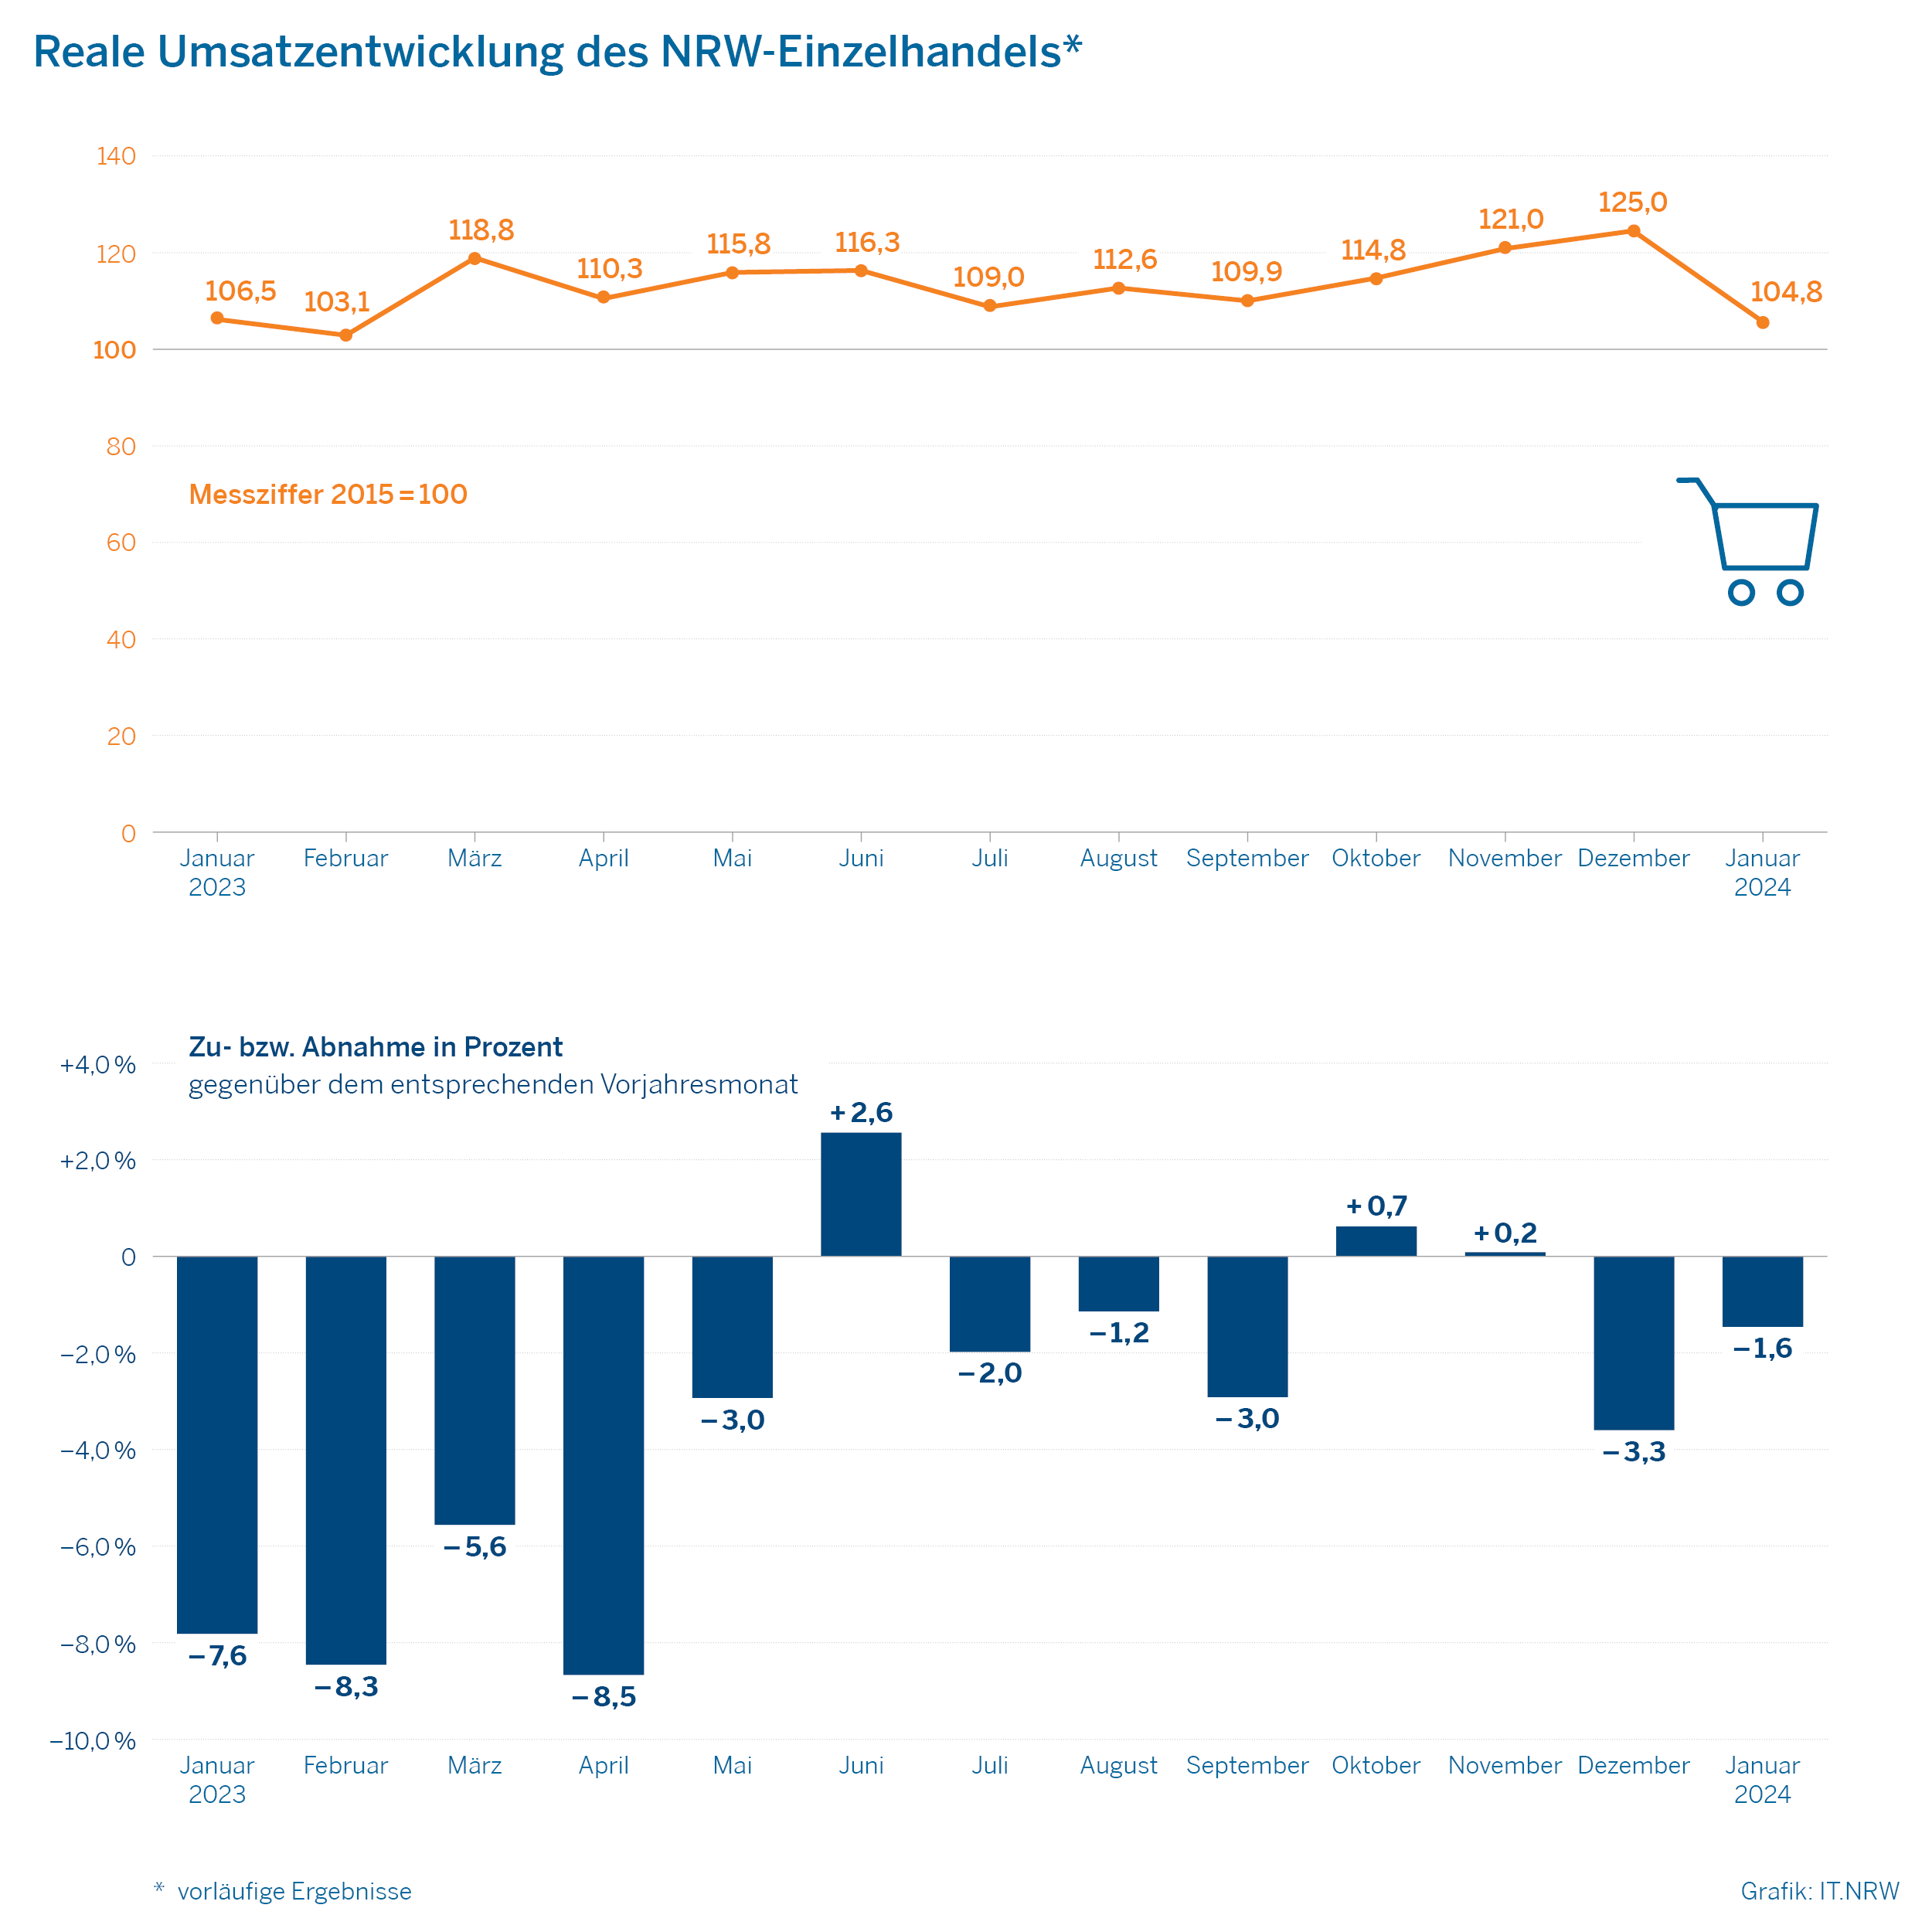 Reale Umsatzentwicklung des NRW-Einzelhandels